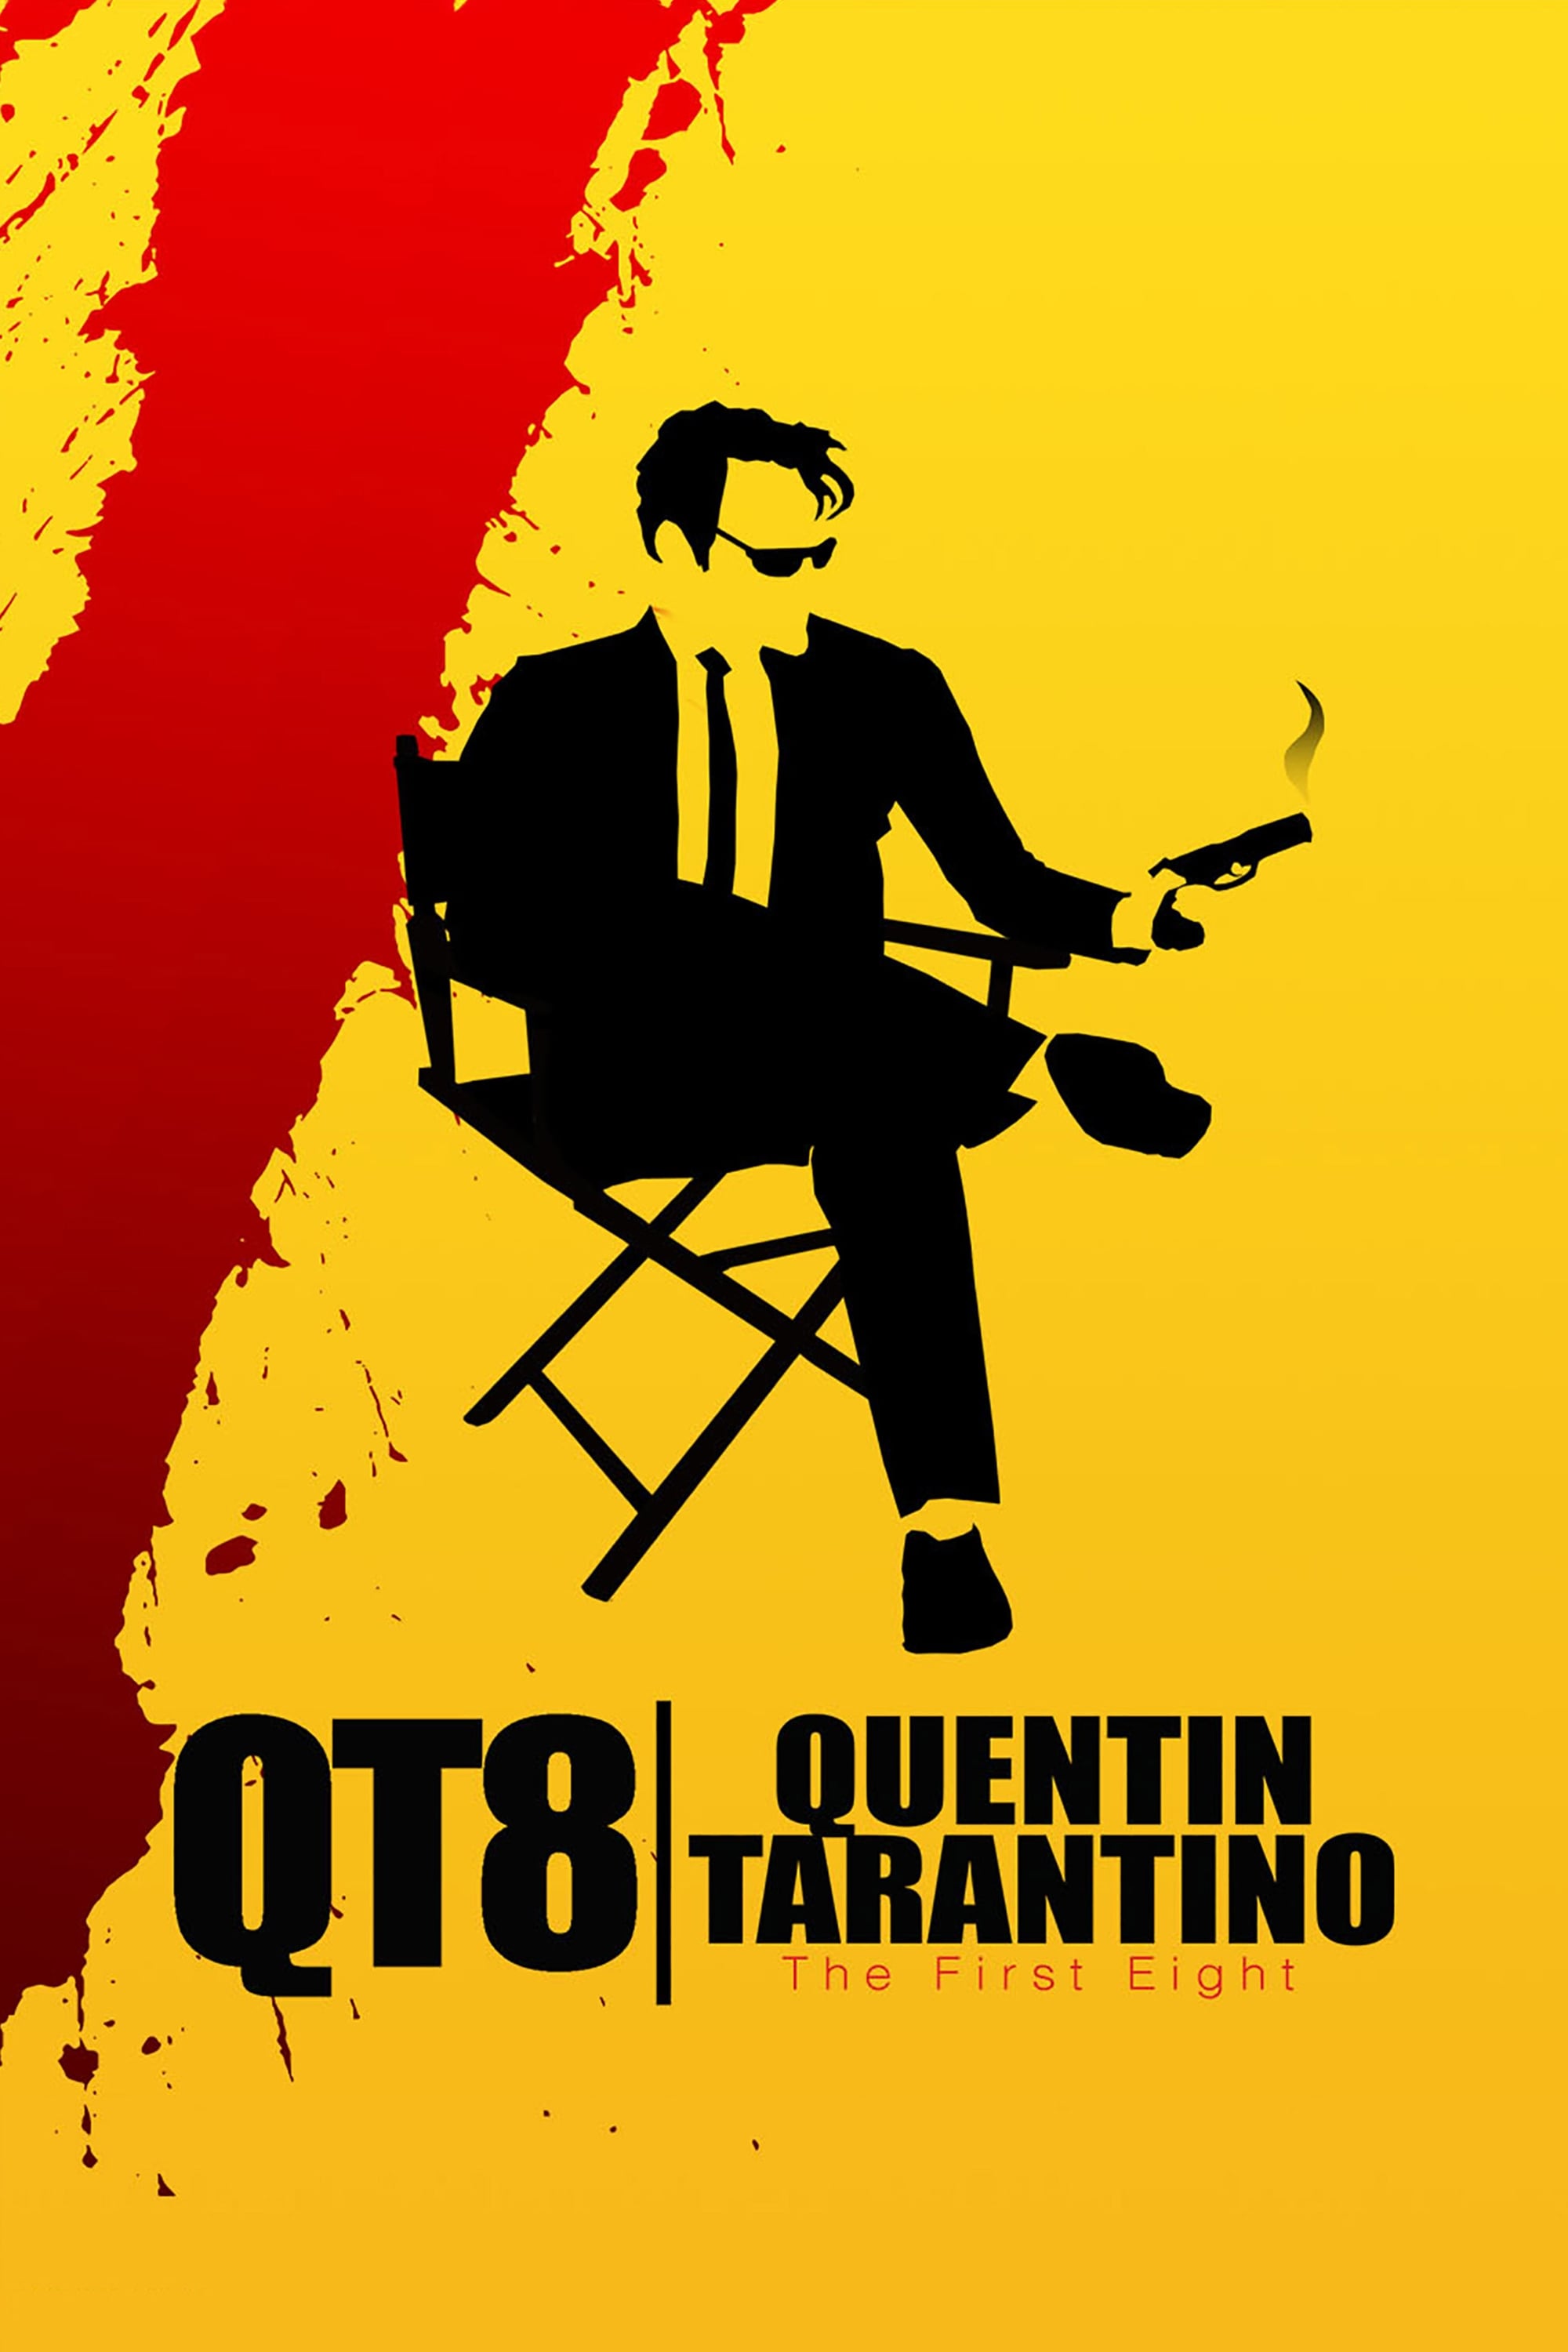 Tarantino - The Bloody Genius